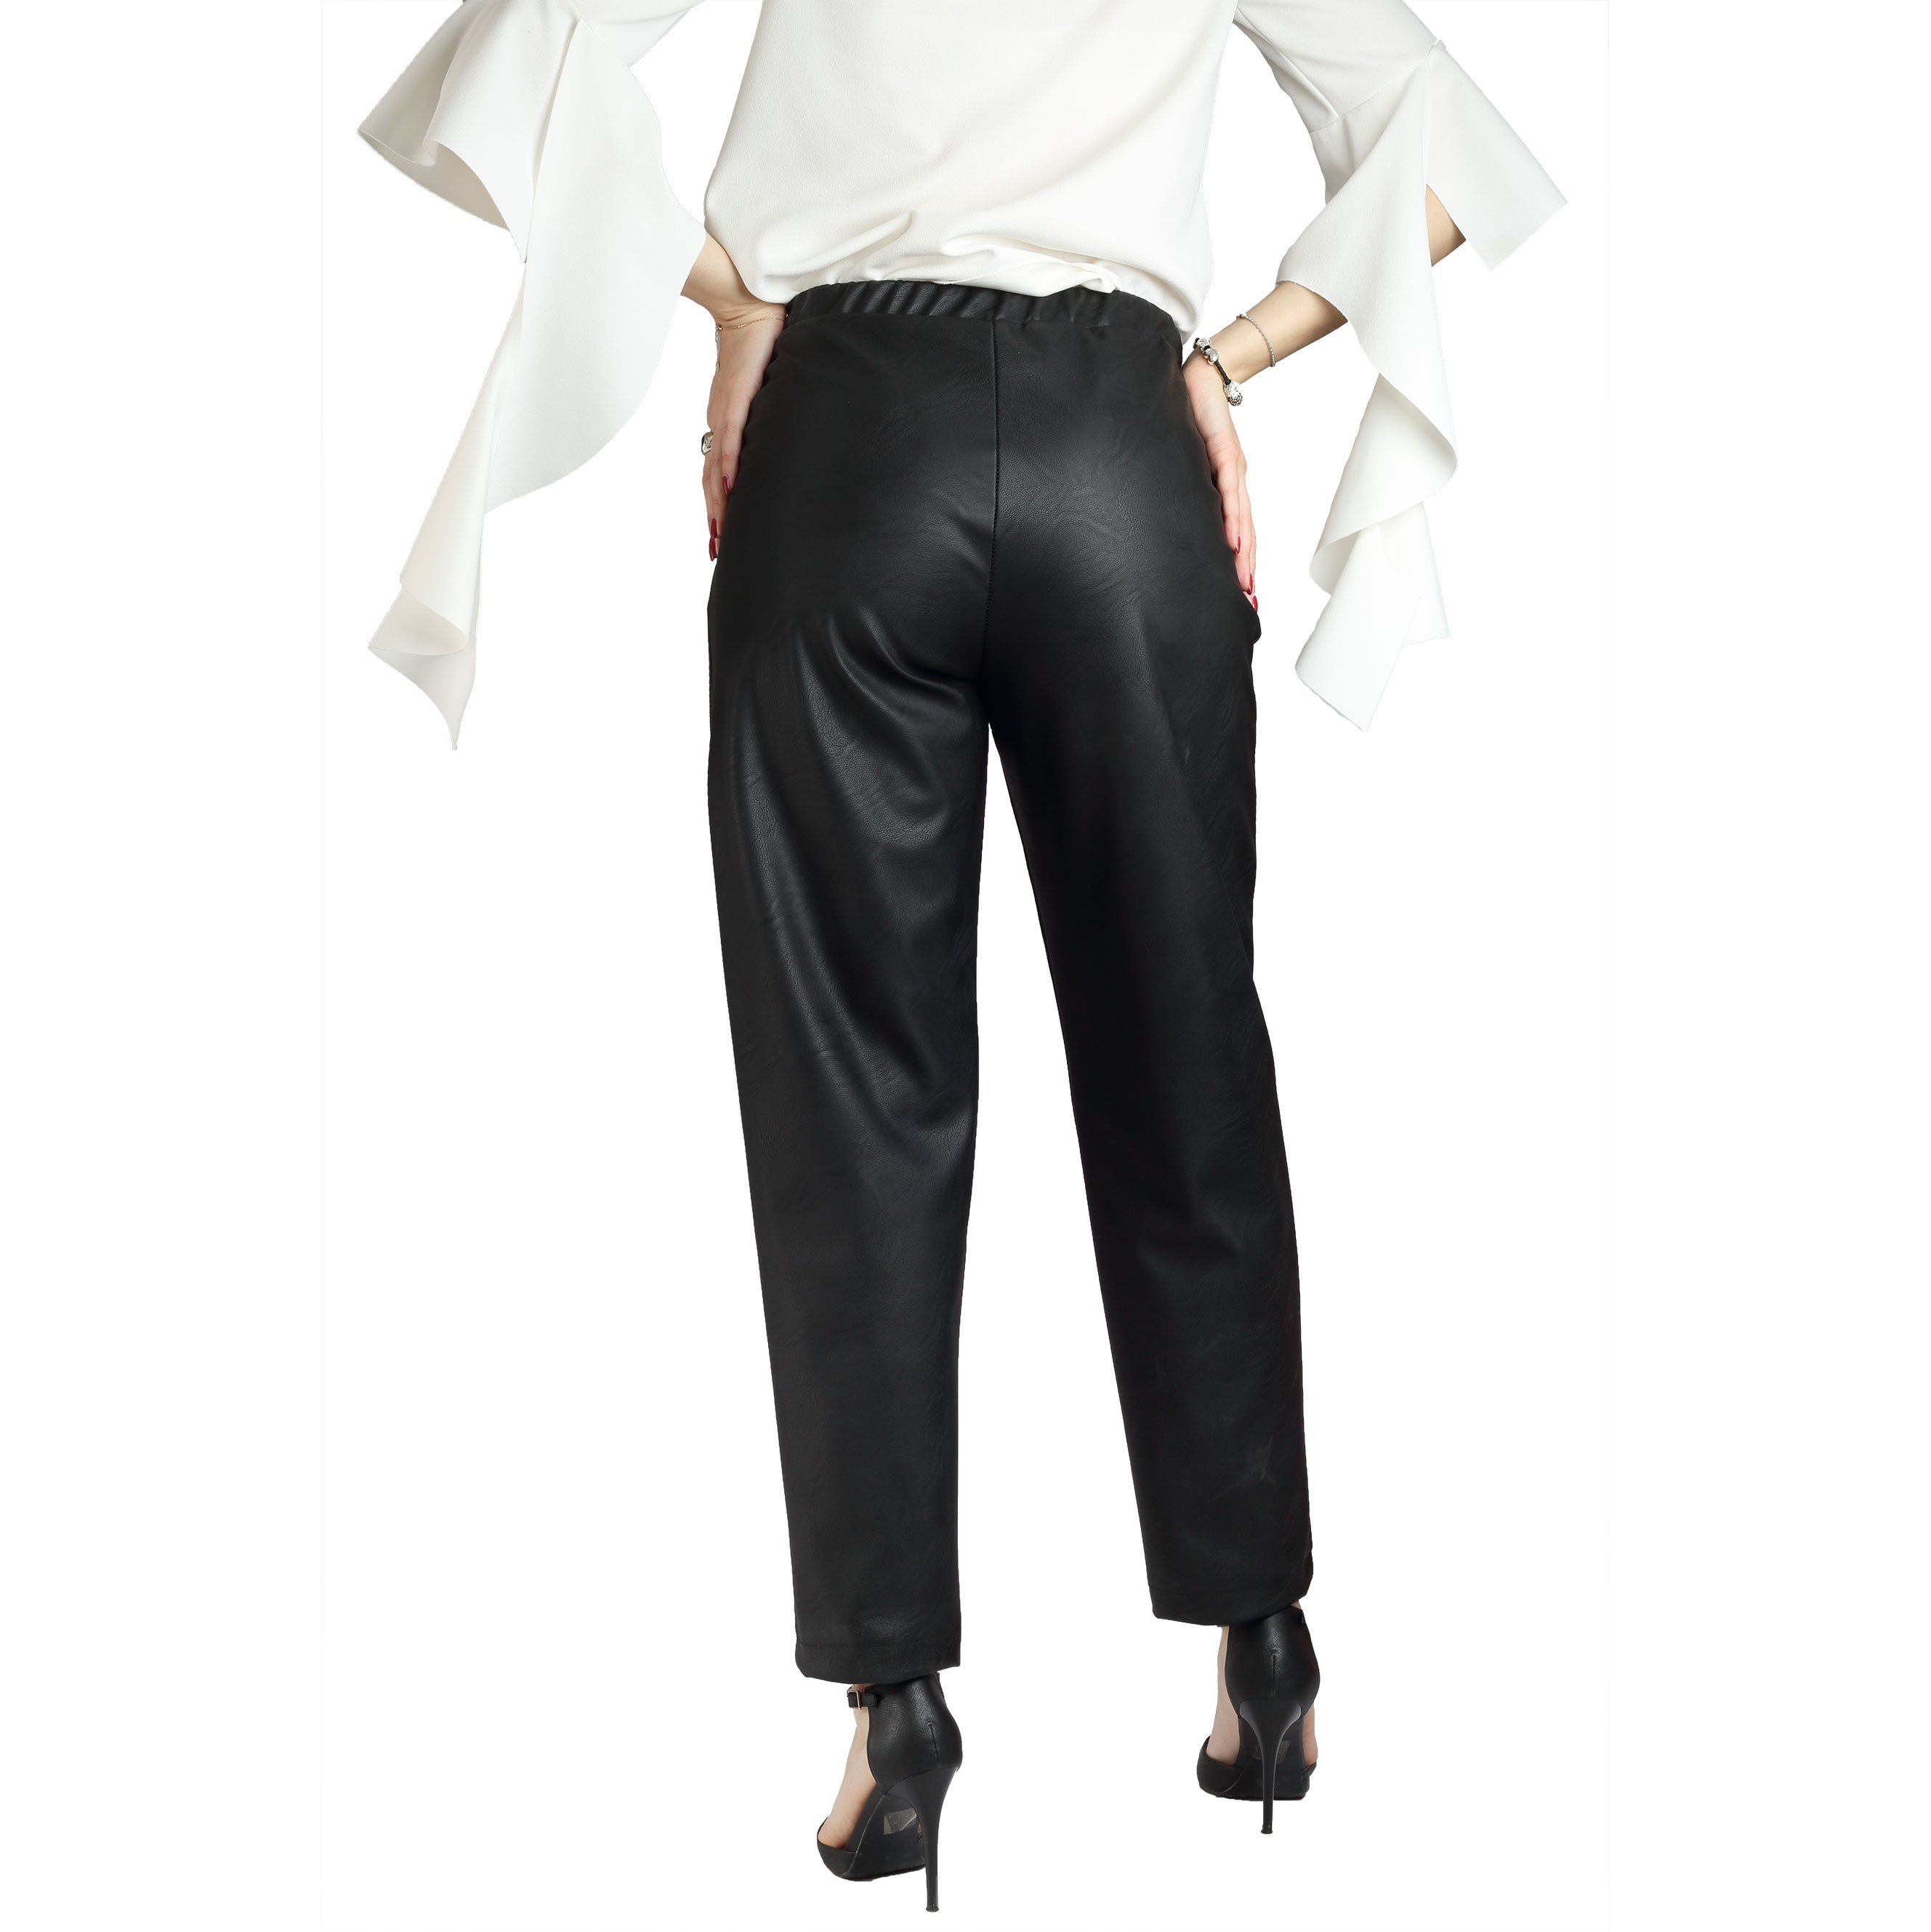 Pantalone donna casual in pelle sintetica con tasche america made in italy 0950